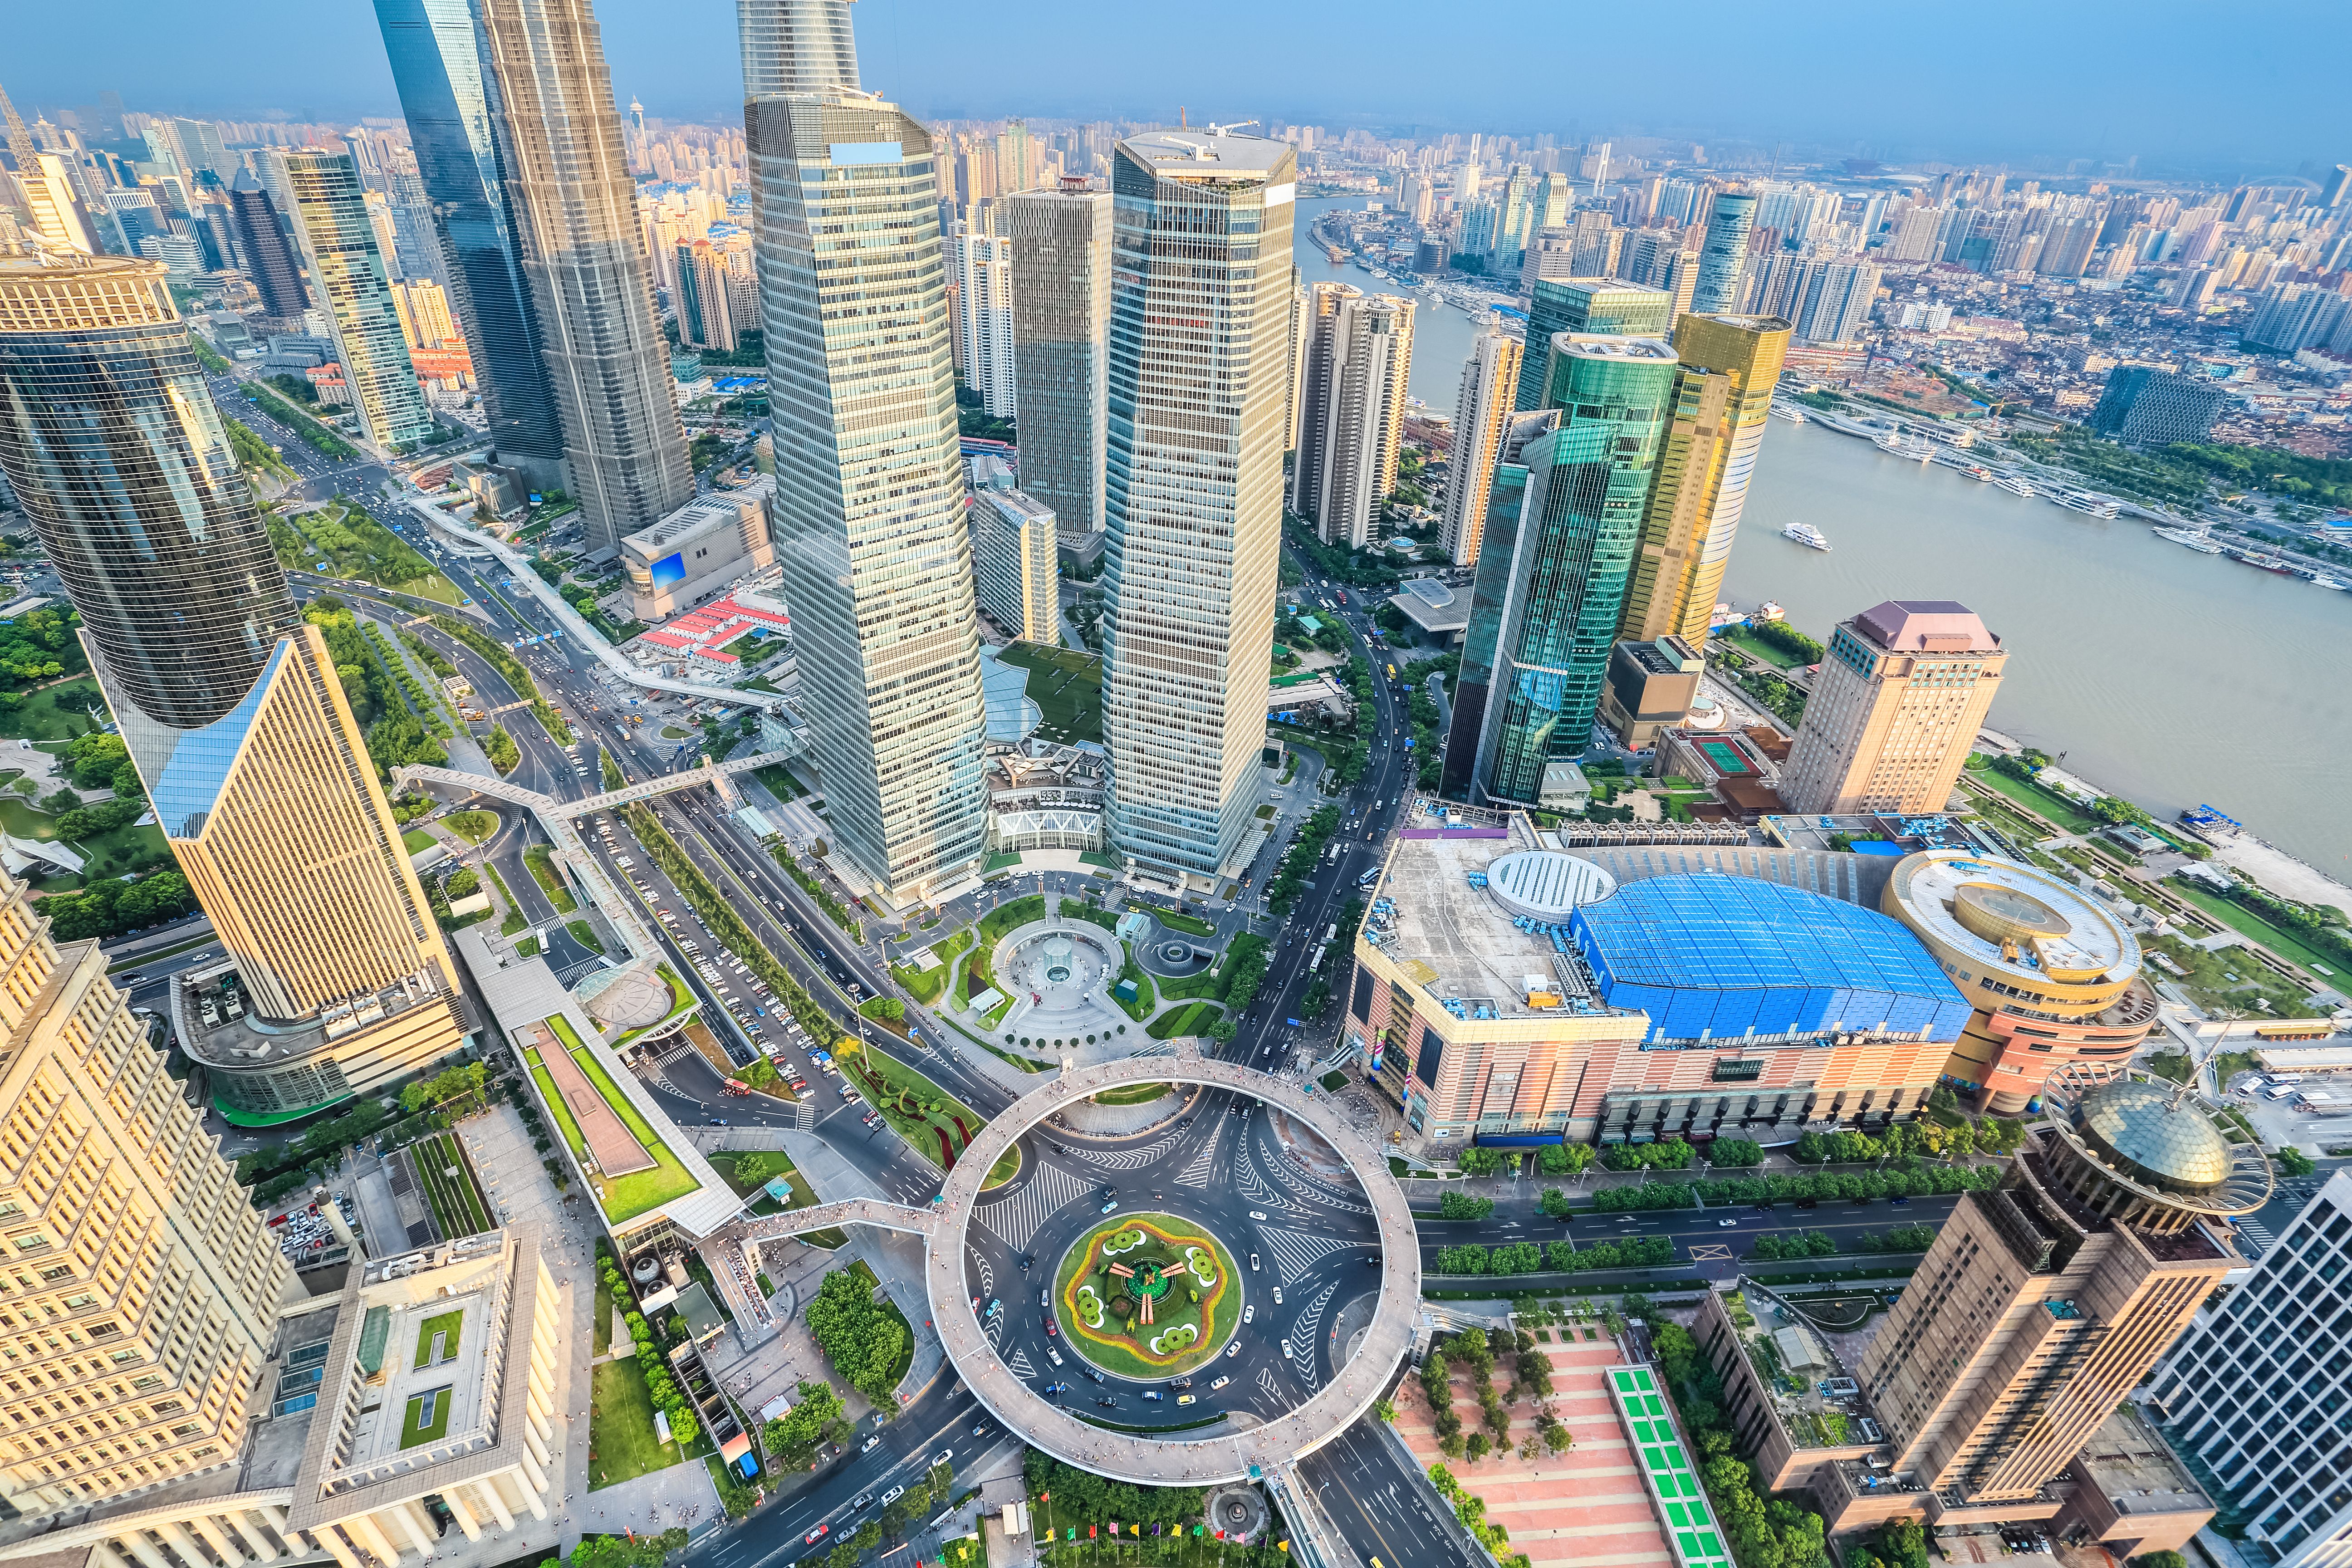 Bird's eye view of Shanghai Lujiazui financial centre